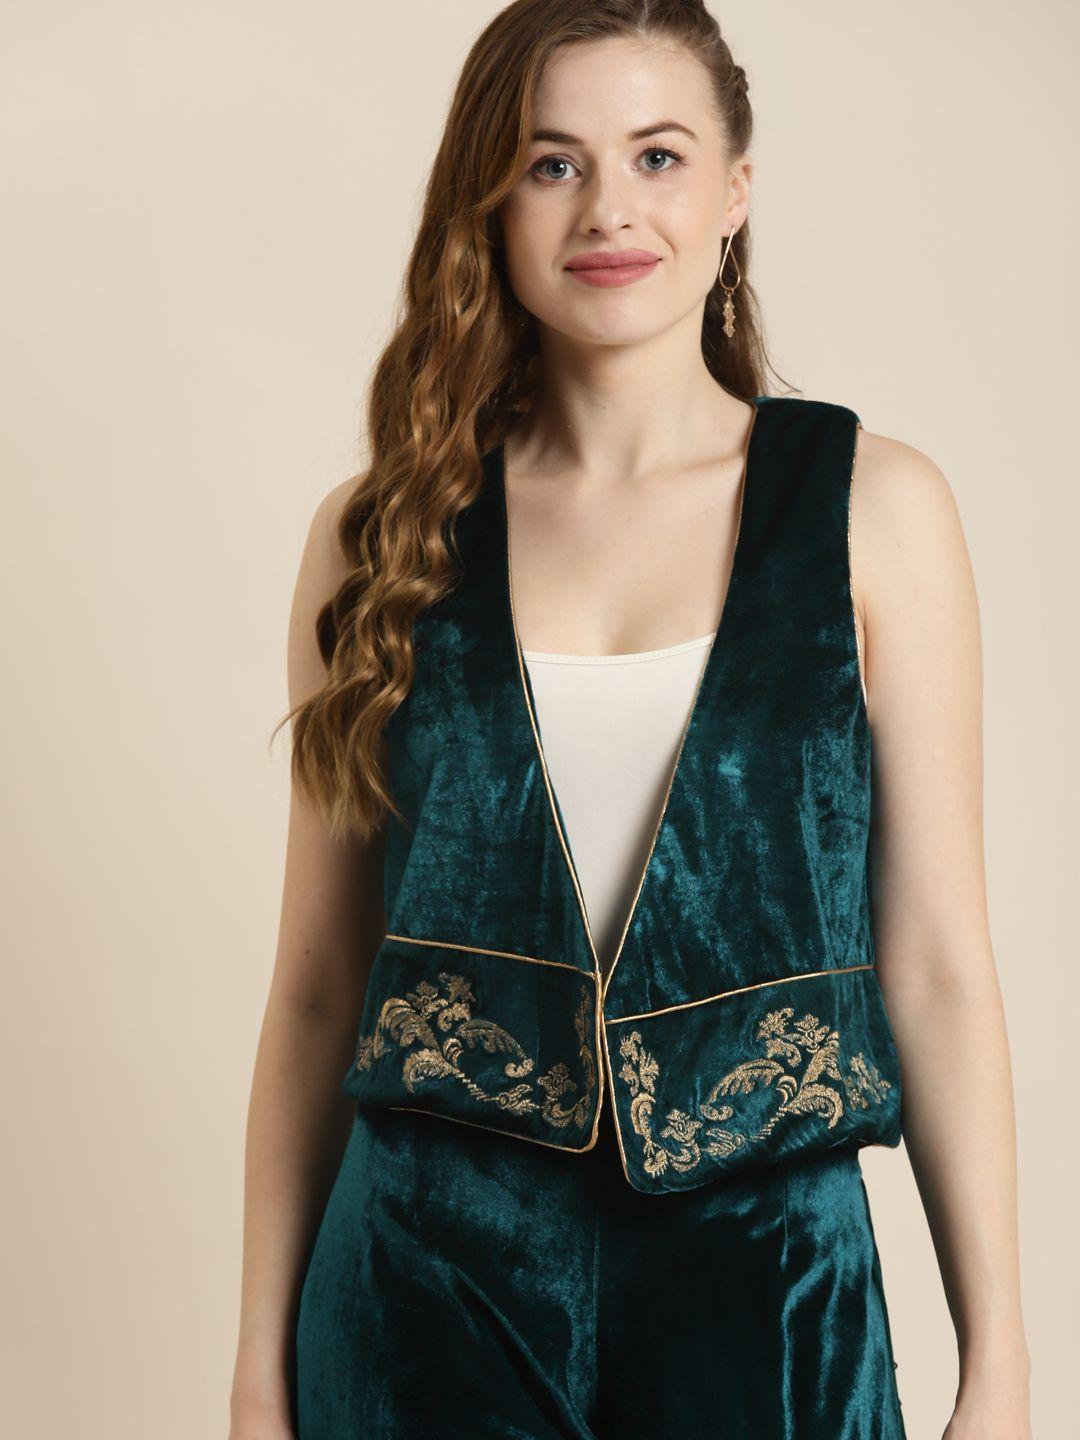 shae by sassafras women teal velvet embellished waistcoat